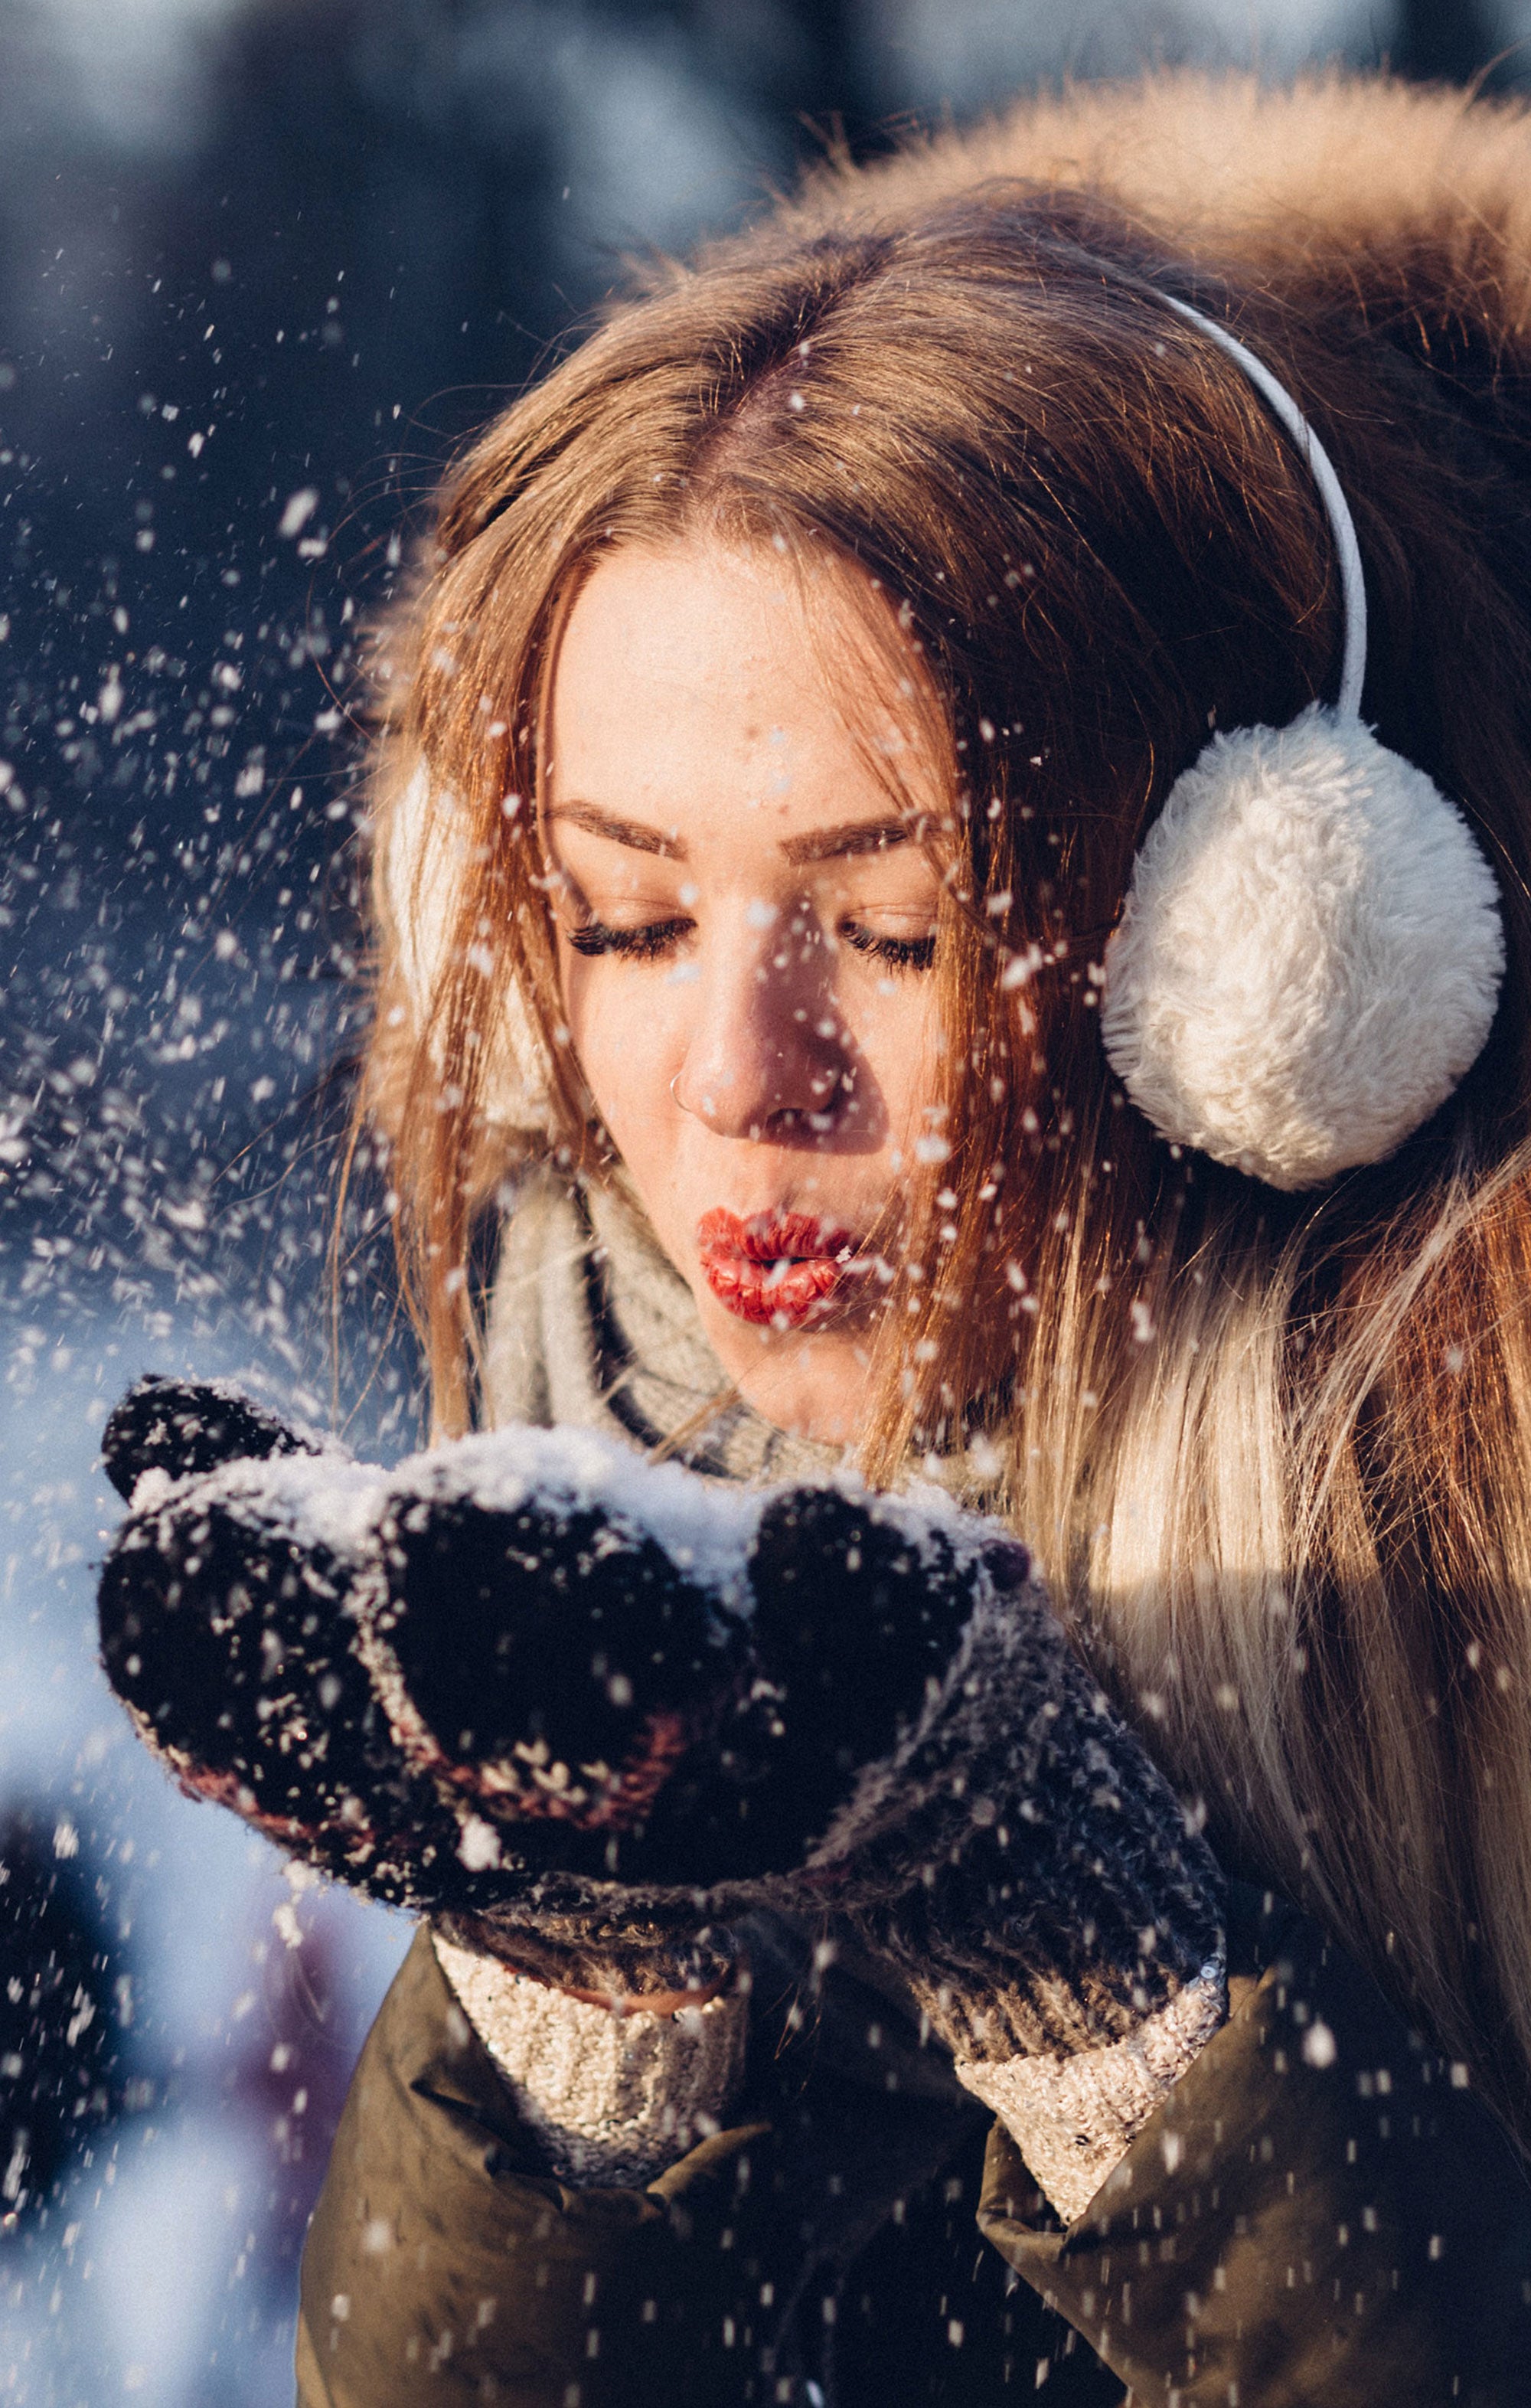 العناية بالبشرة الشتوية: كيف تساعد بشرتك على التعامل مع البرد القارس والرياح والجفاف